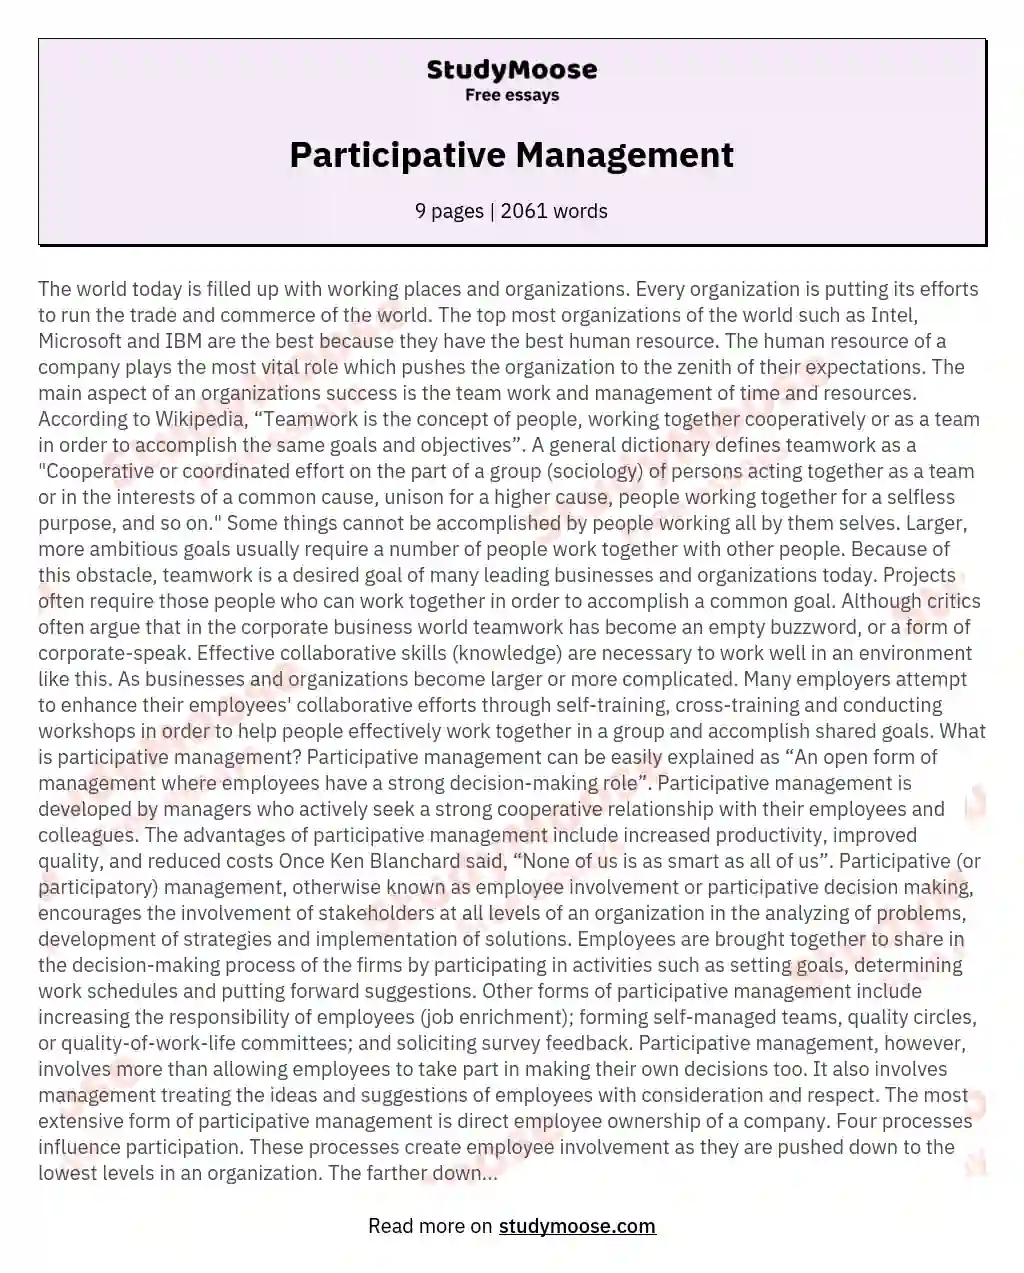 Participative Management essay